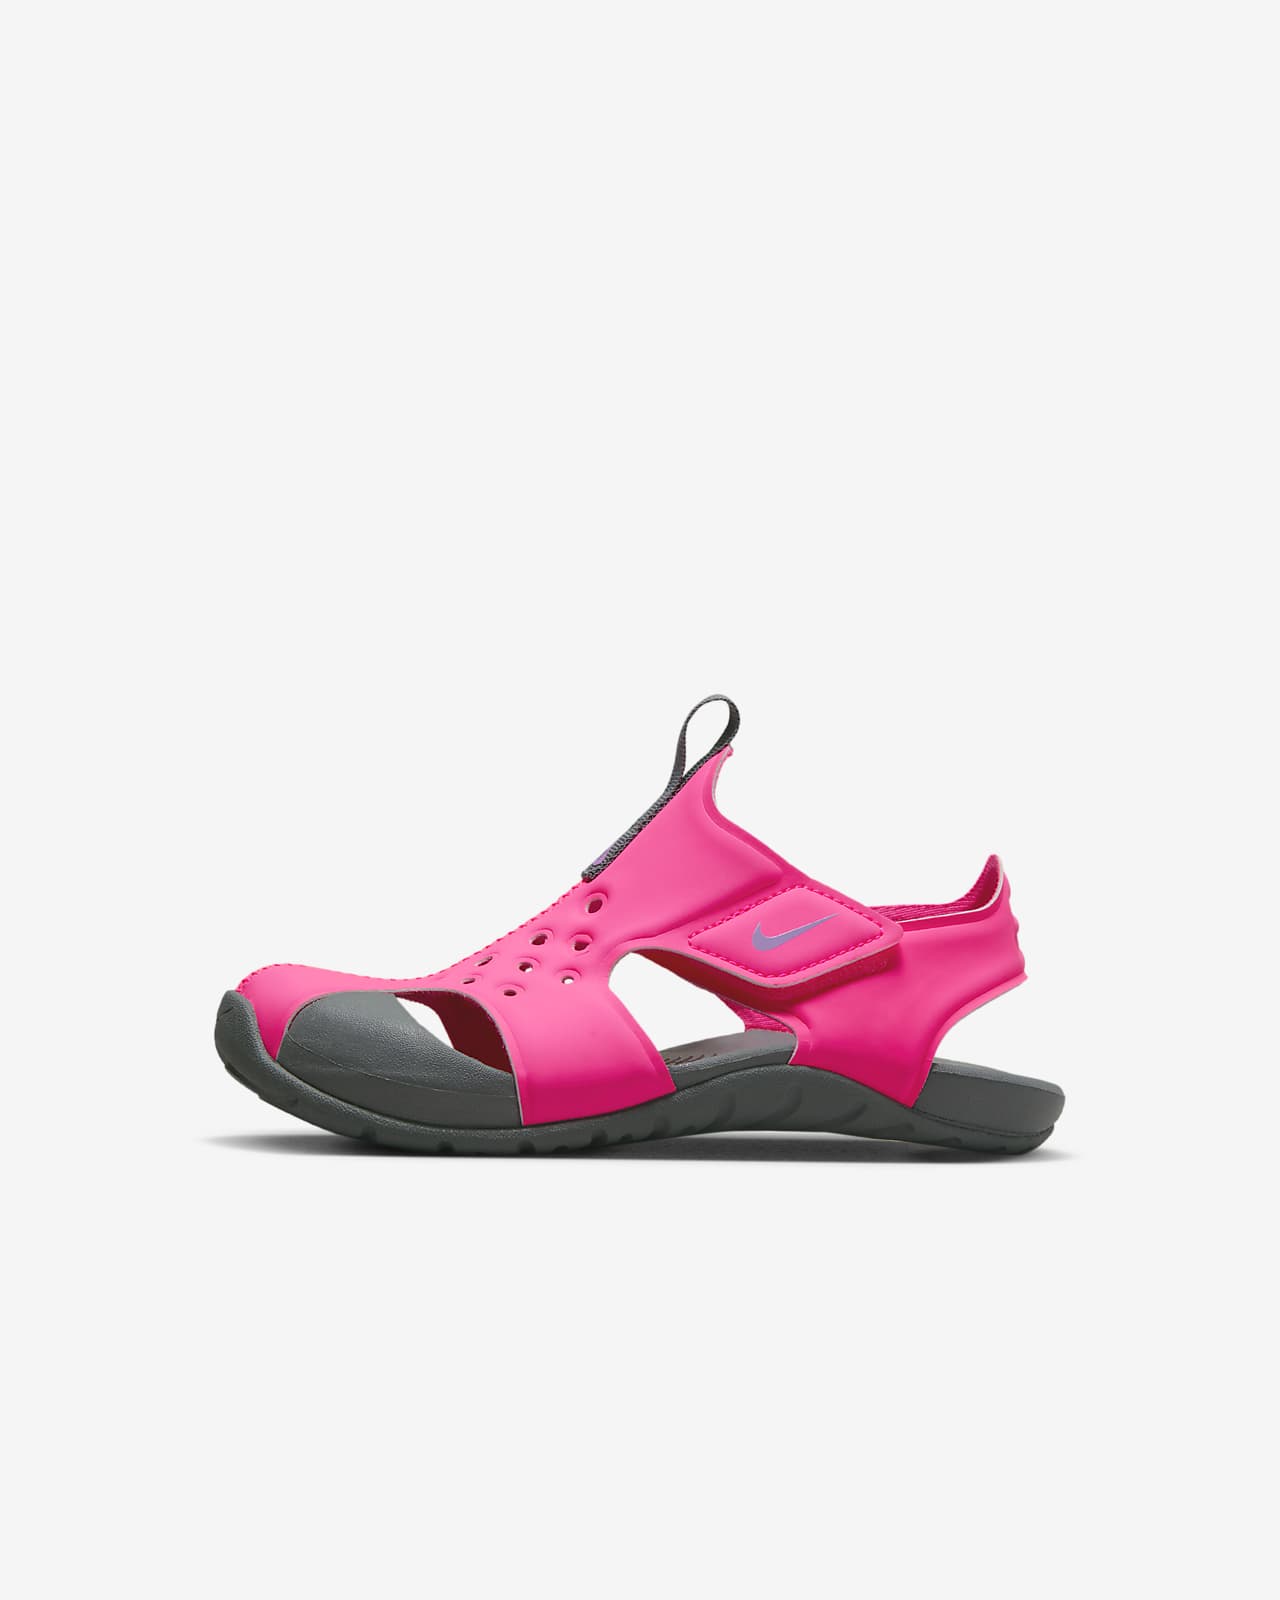 Sandalias para niños talla pequeña Nike Sunray Protect 2